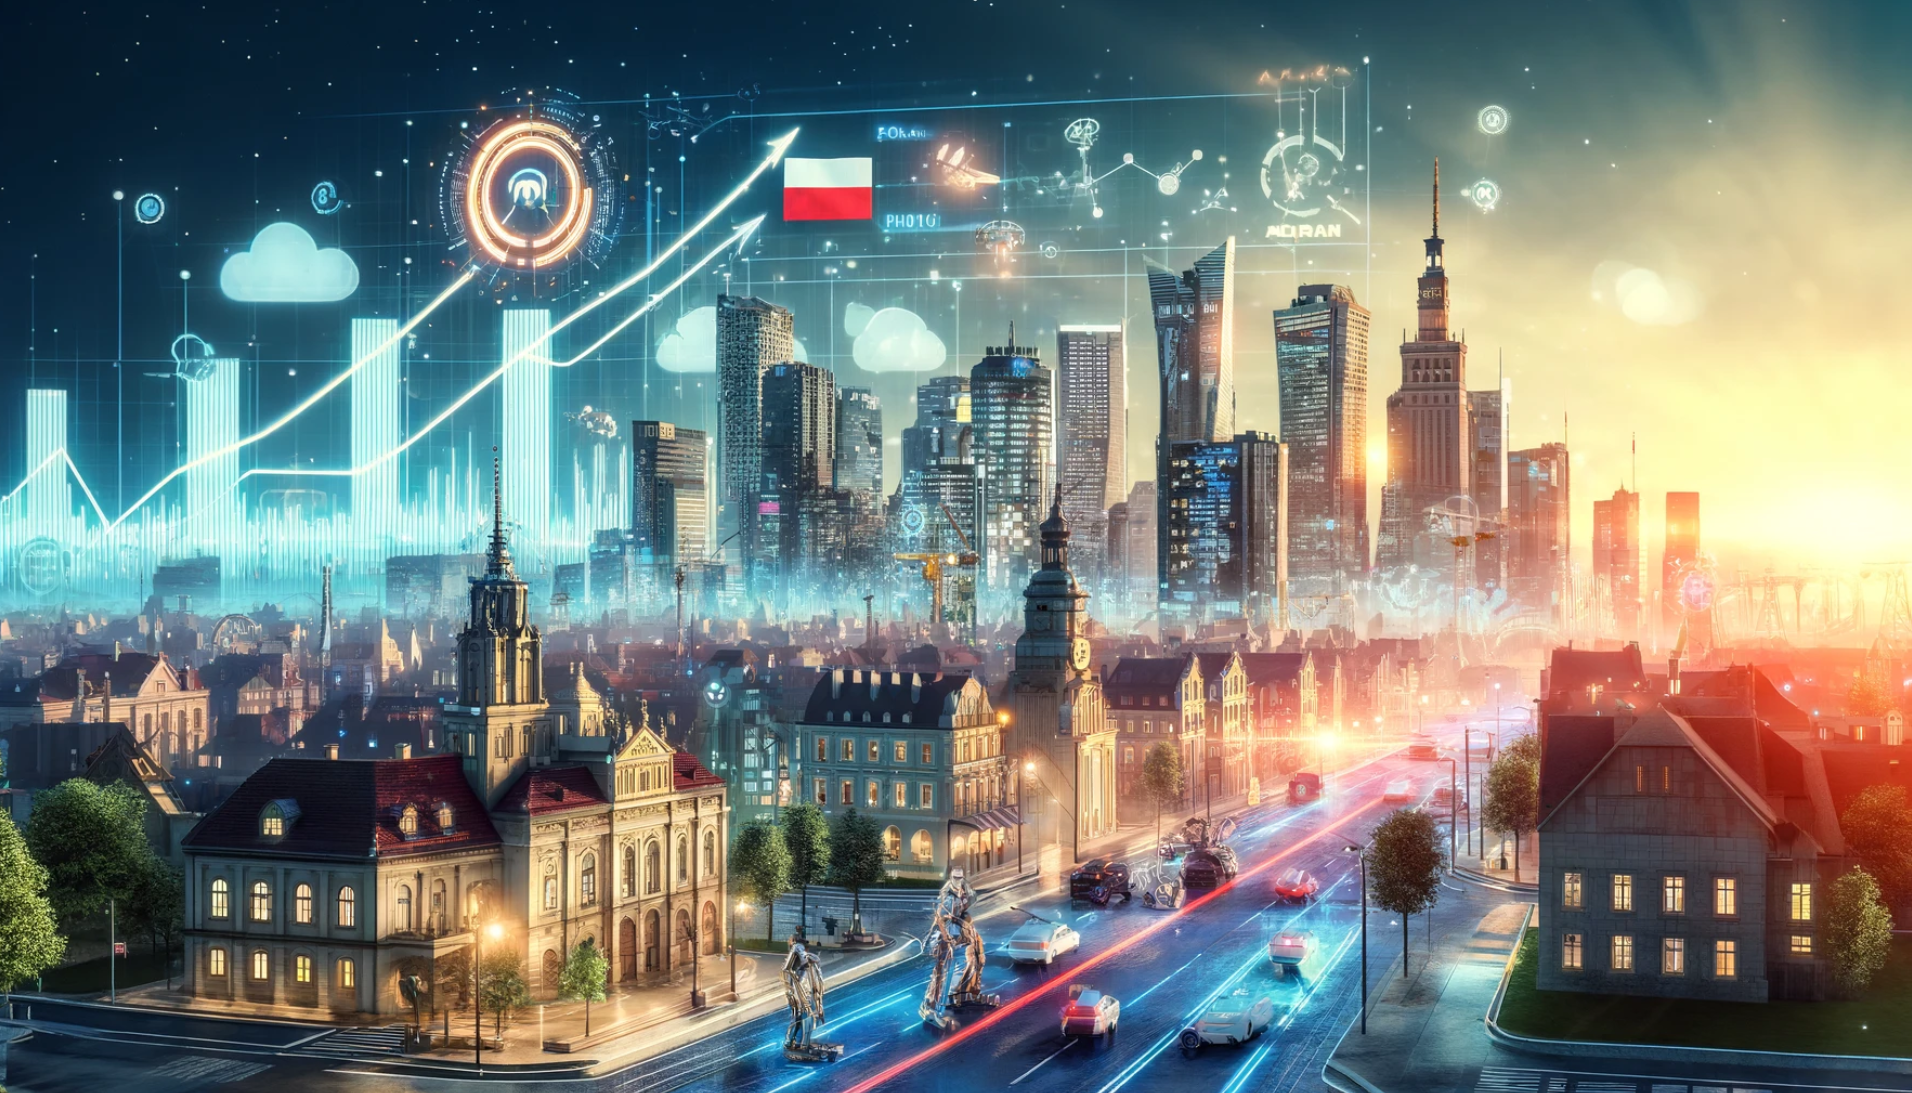 Polen profitiert stark von Künstlicher Intelligenz sagt EY